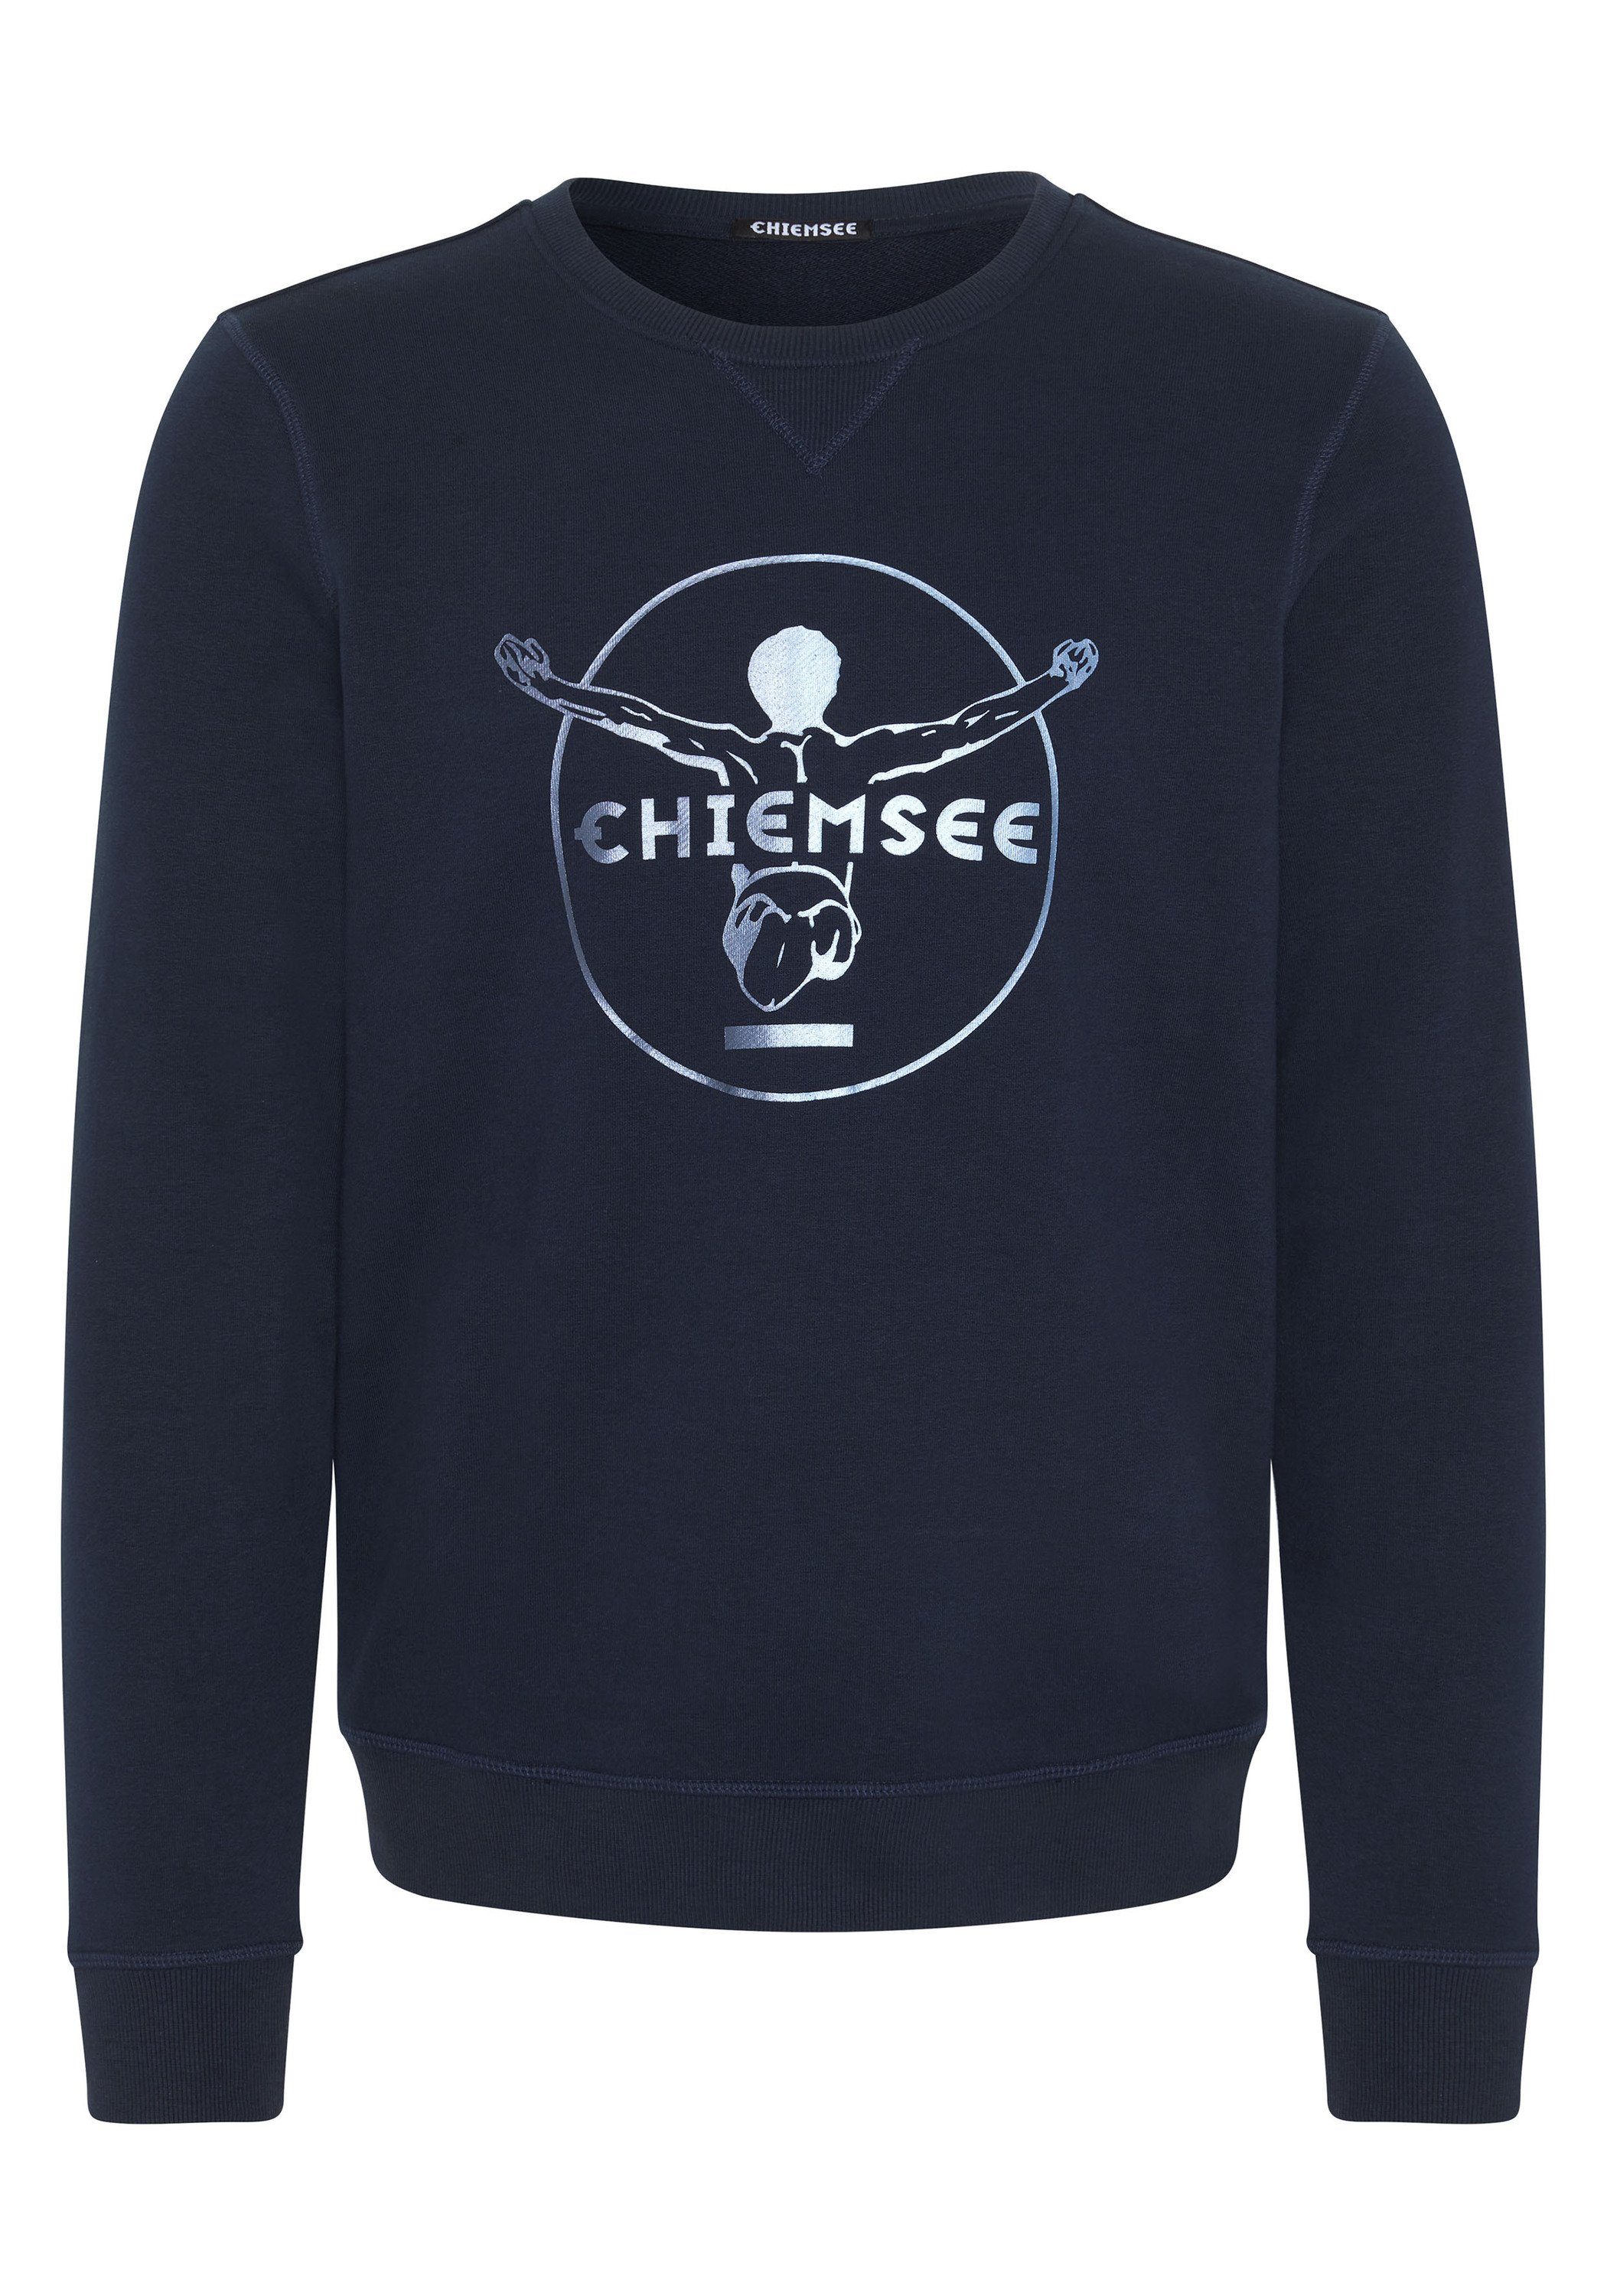 Chiemsee Sweatshirt Sweater im Label-Look 1 dunkel blau